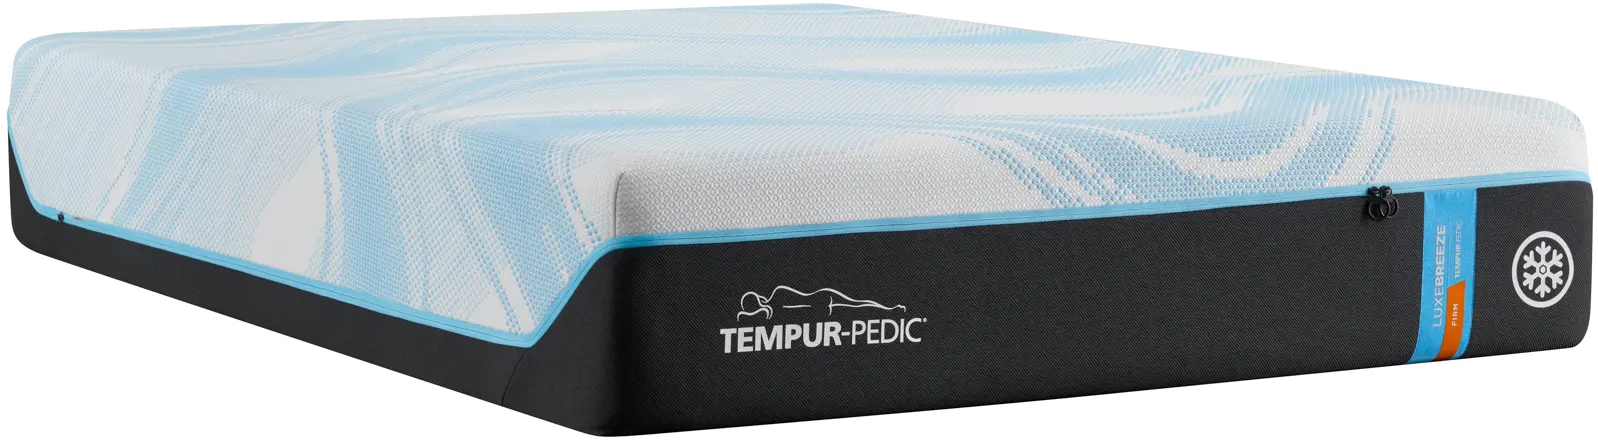 Tempur-Pedic LuxeBreeze 2.0 Firm Queen Mattress